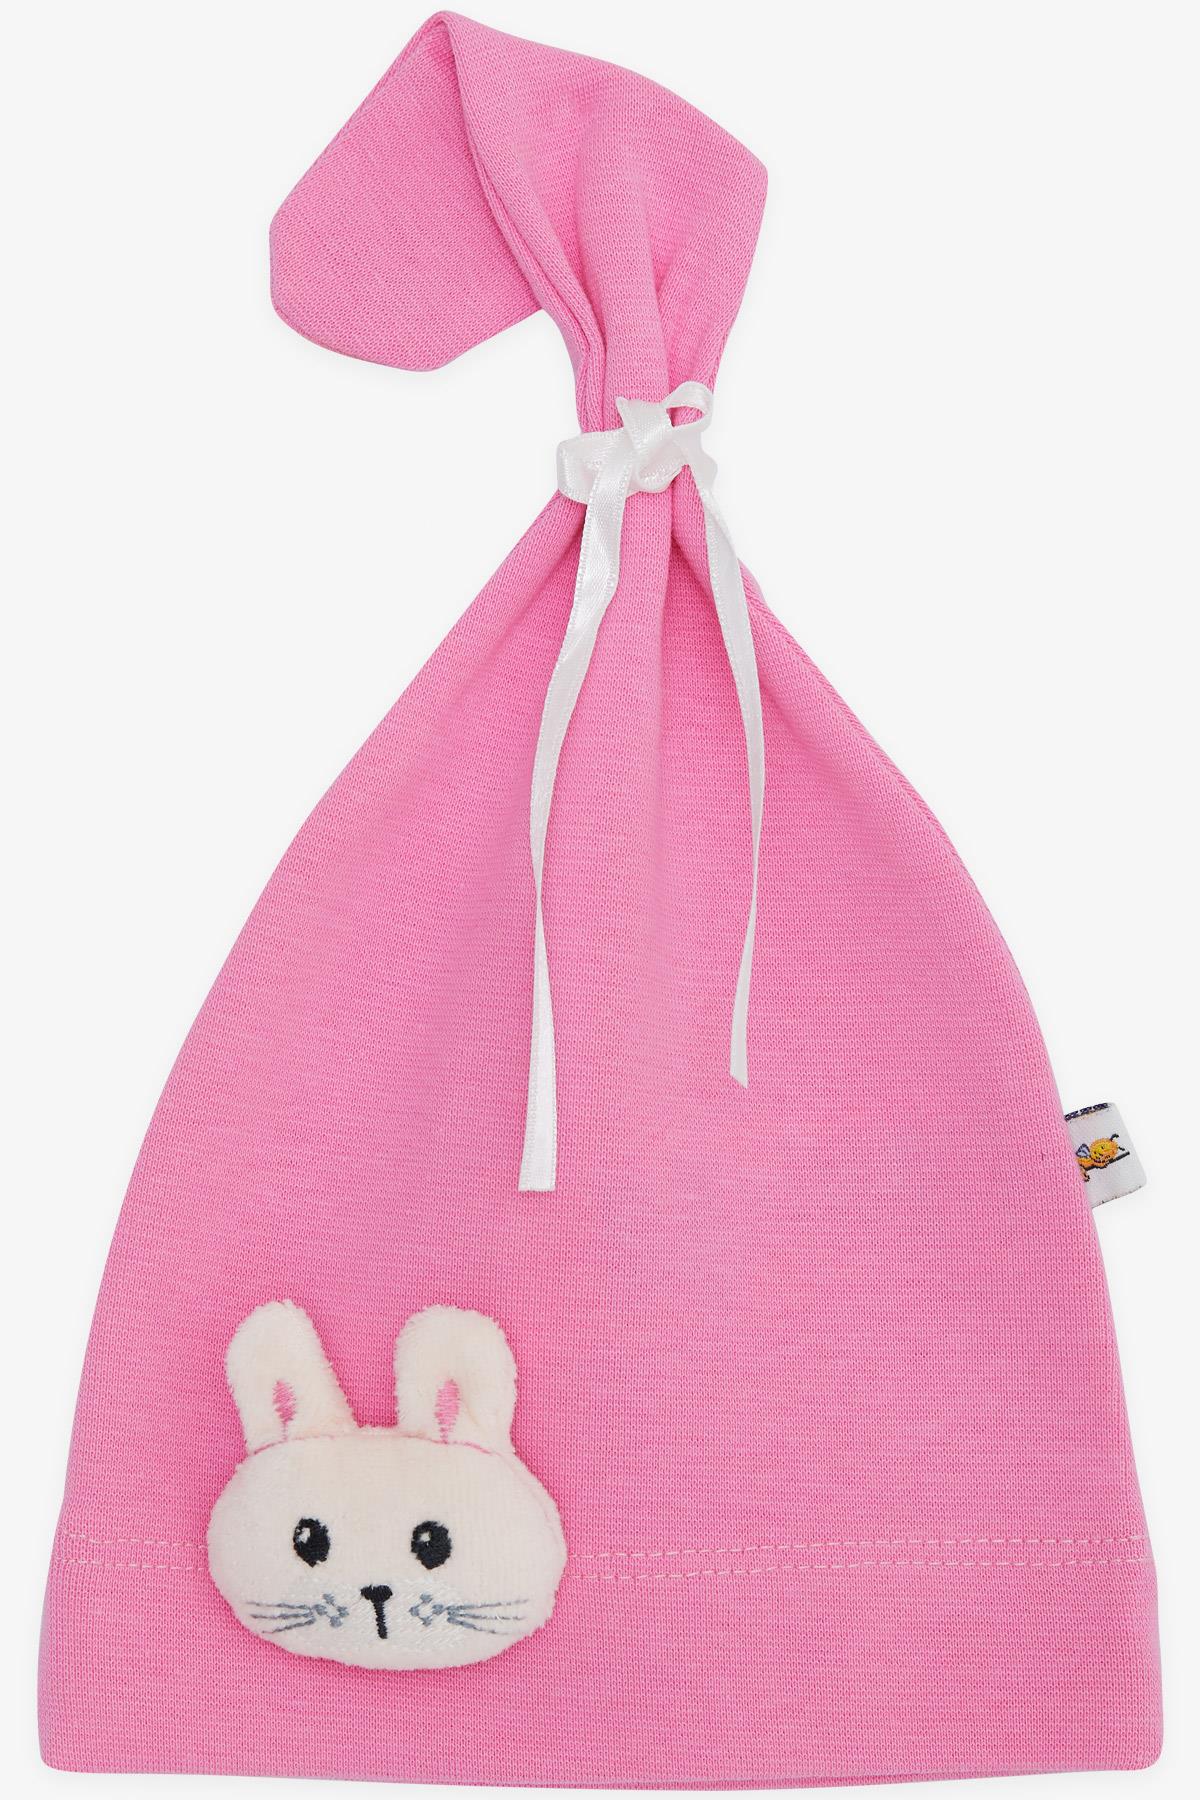 Yeni Doğan Bebek Şapkası Sevimli Tavşancık Oyuncak Aksesuarlı Pembe  Standart - Minik Bebek Şapka Modelleri | Breeze